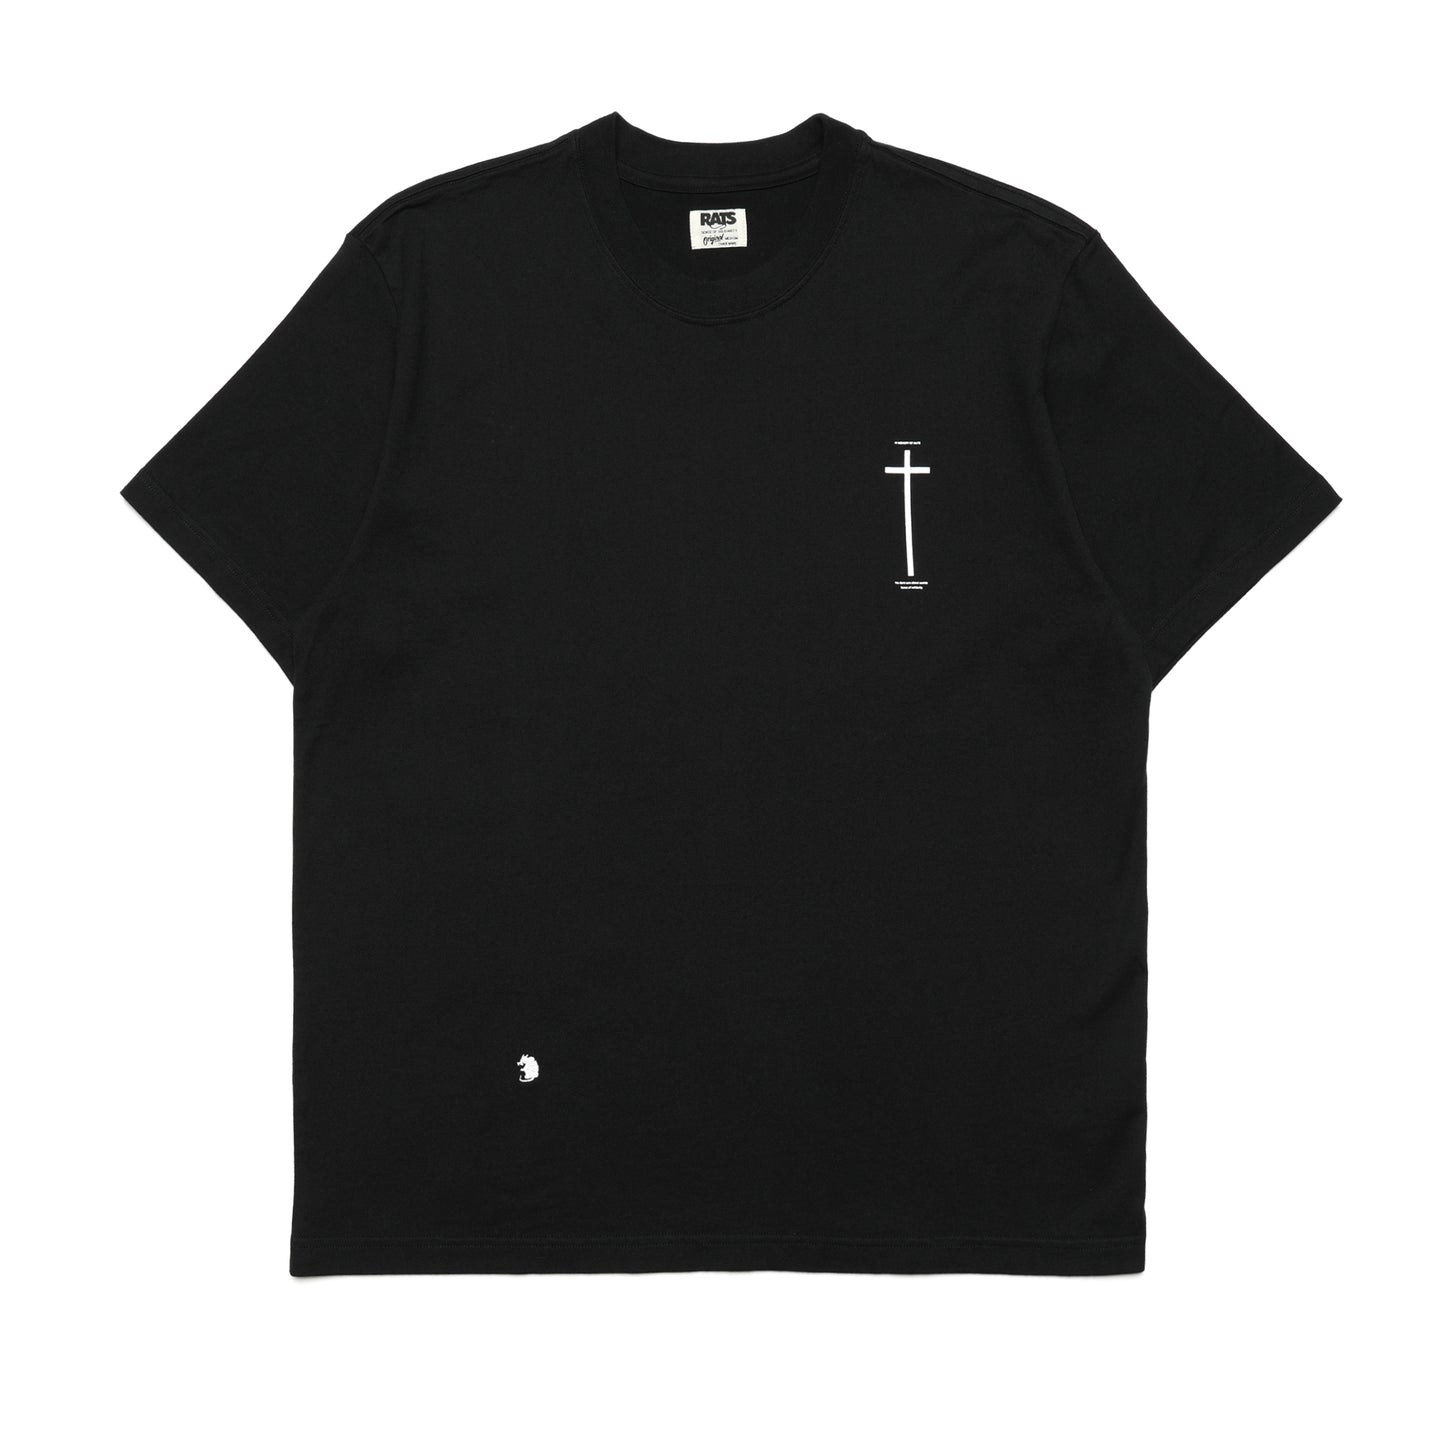 Rats Cross T-Shirt Black